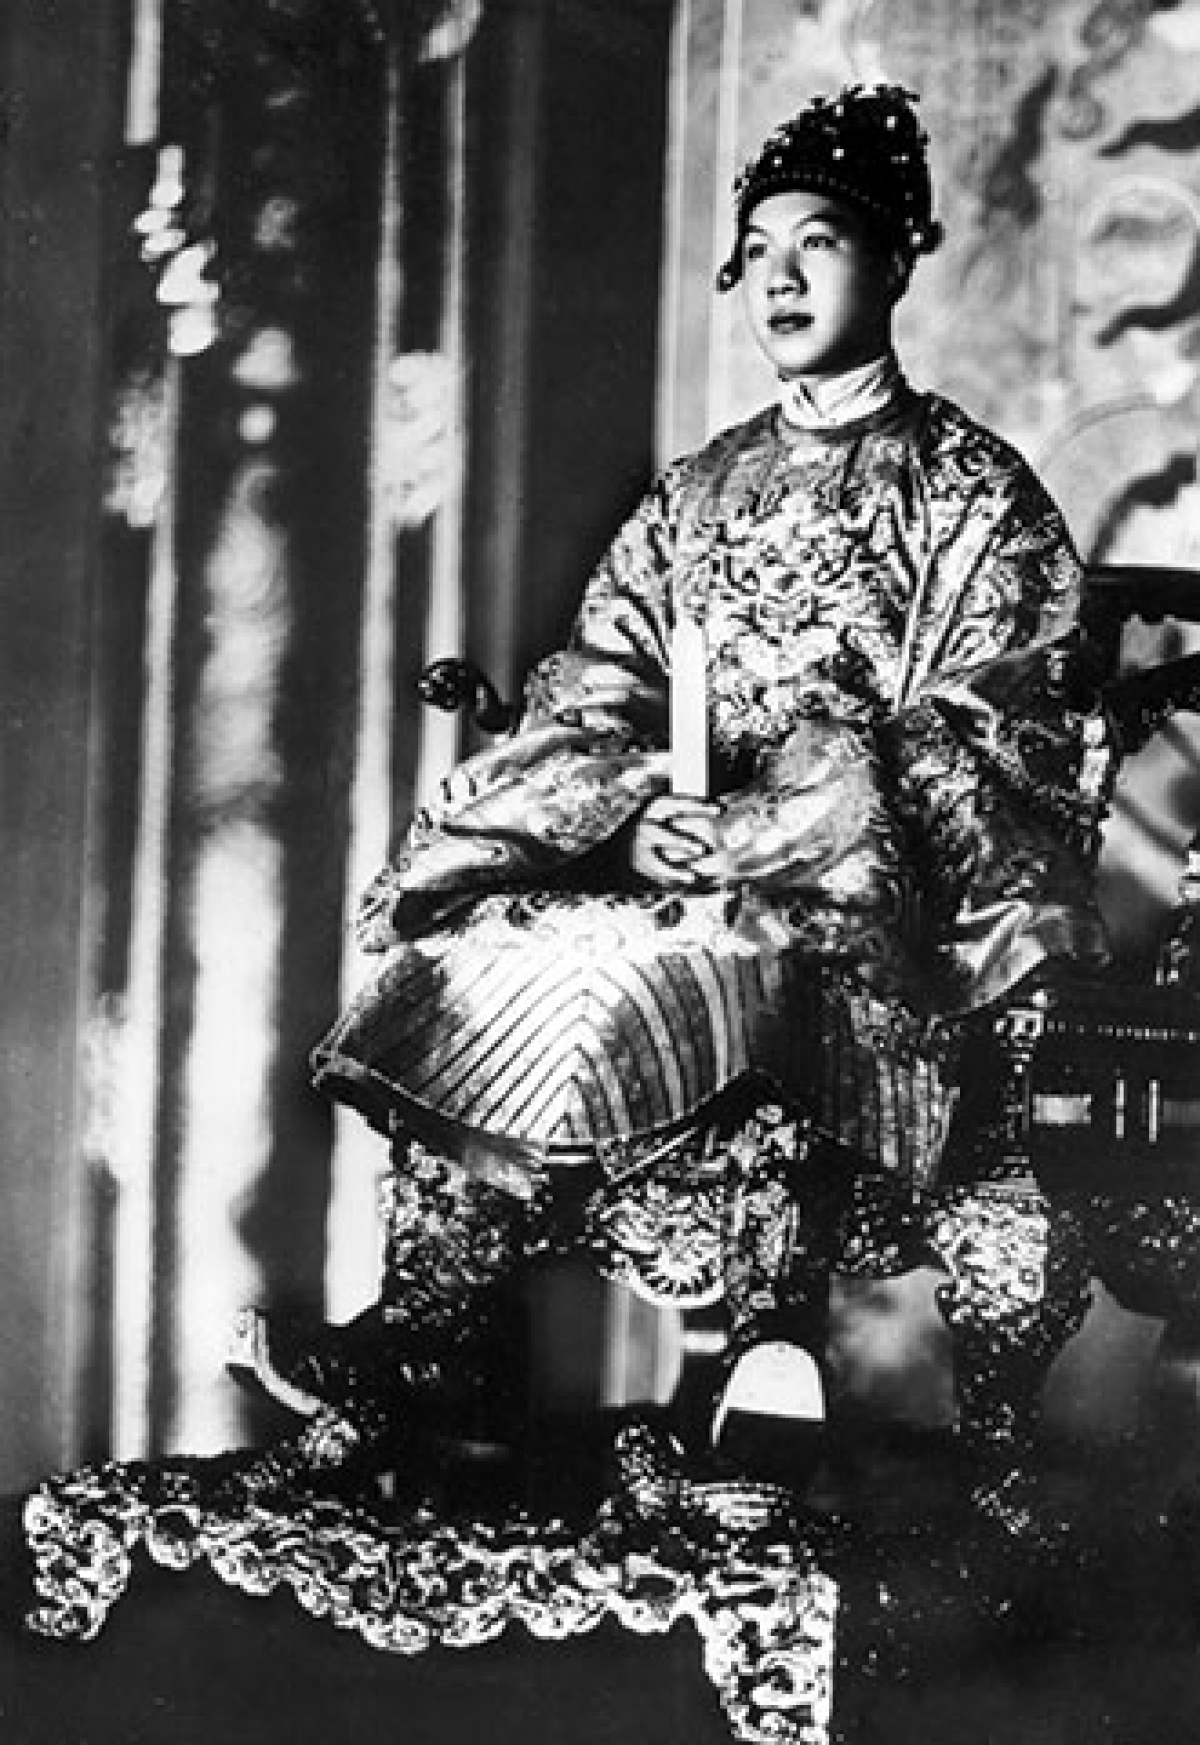 Vua Bảo Đại trong trang phục đại triều, đầu đội mão (mũ) cửu long, ngự trên ngai vàng trong điện Thái Hòa.